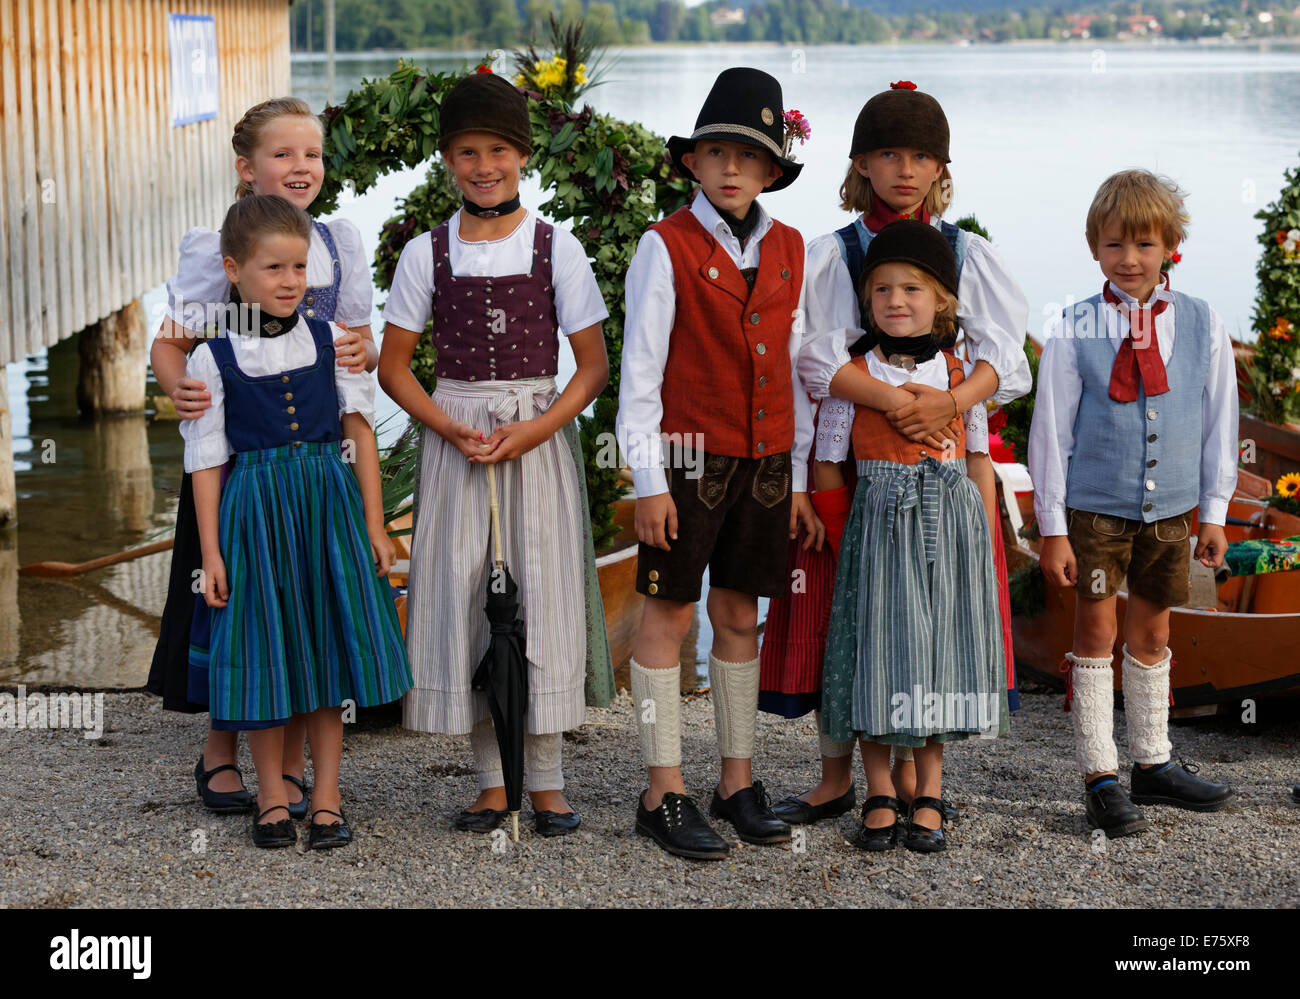 Kinder, die in traditionellen Kostümen, Alt-Schlierseer-Bad Festival, Schliersee, Upper Bavaria, Bavaria, Germany Stockfoto